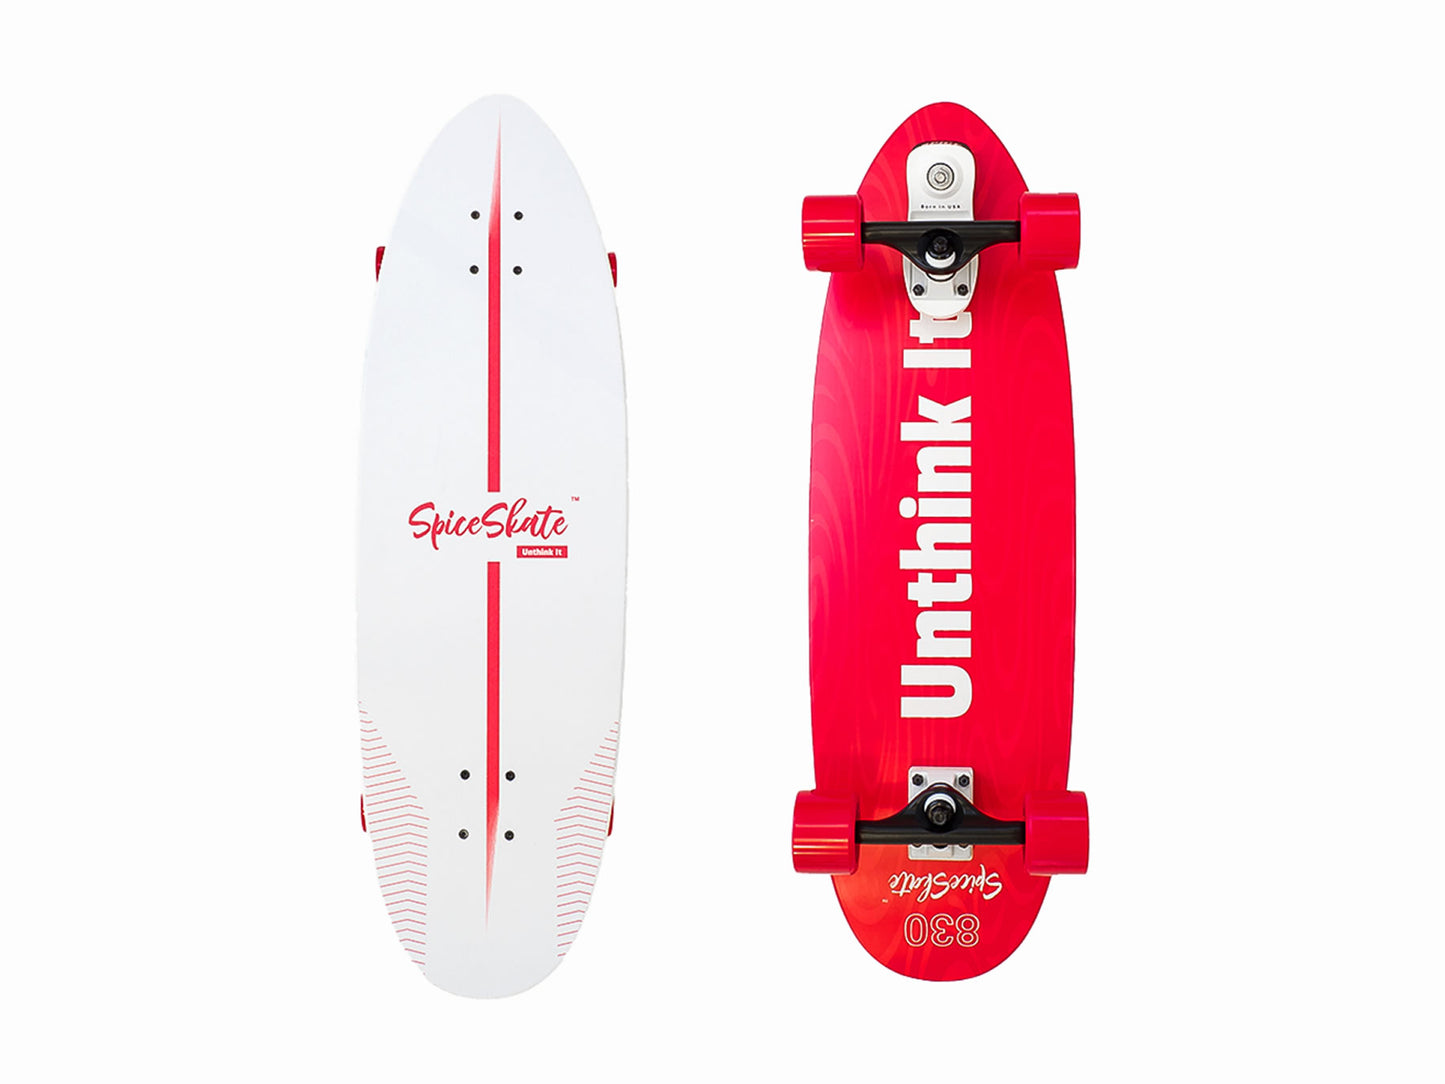 SpiceSkate SurfSkate Type S | HABANERO 830